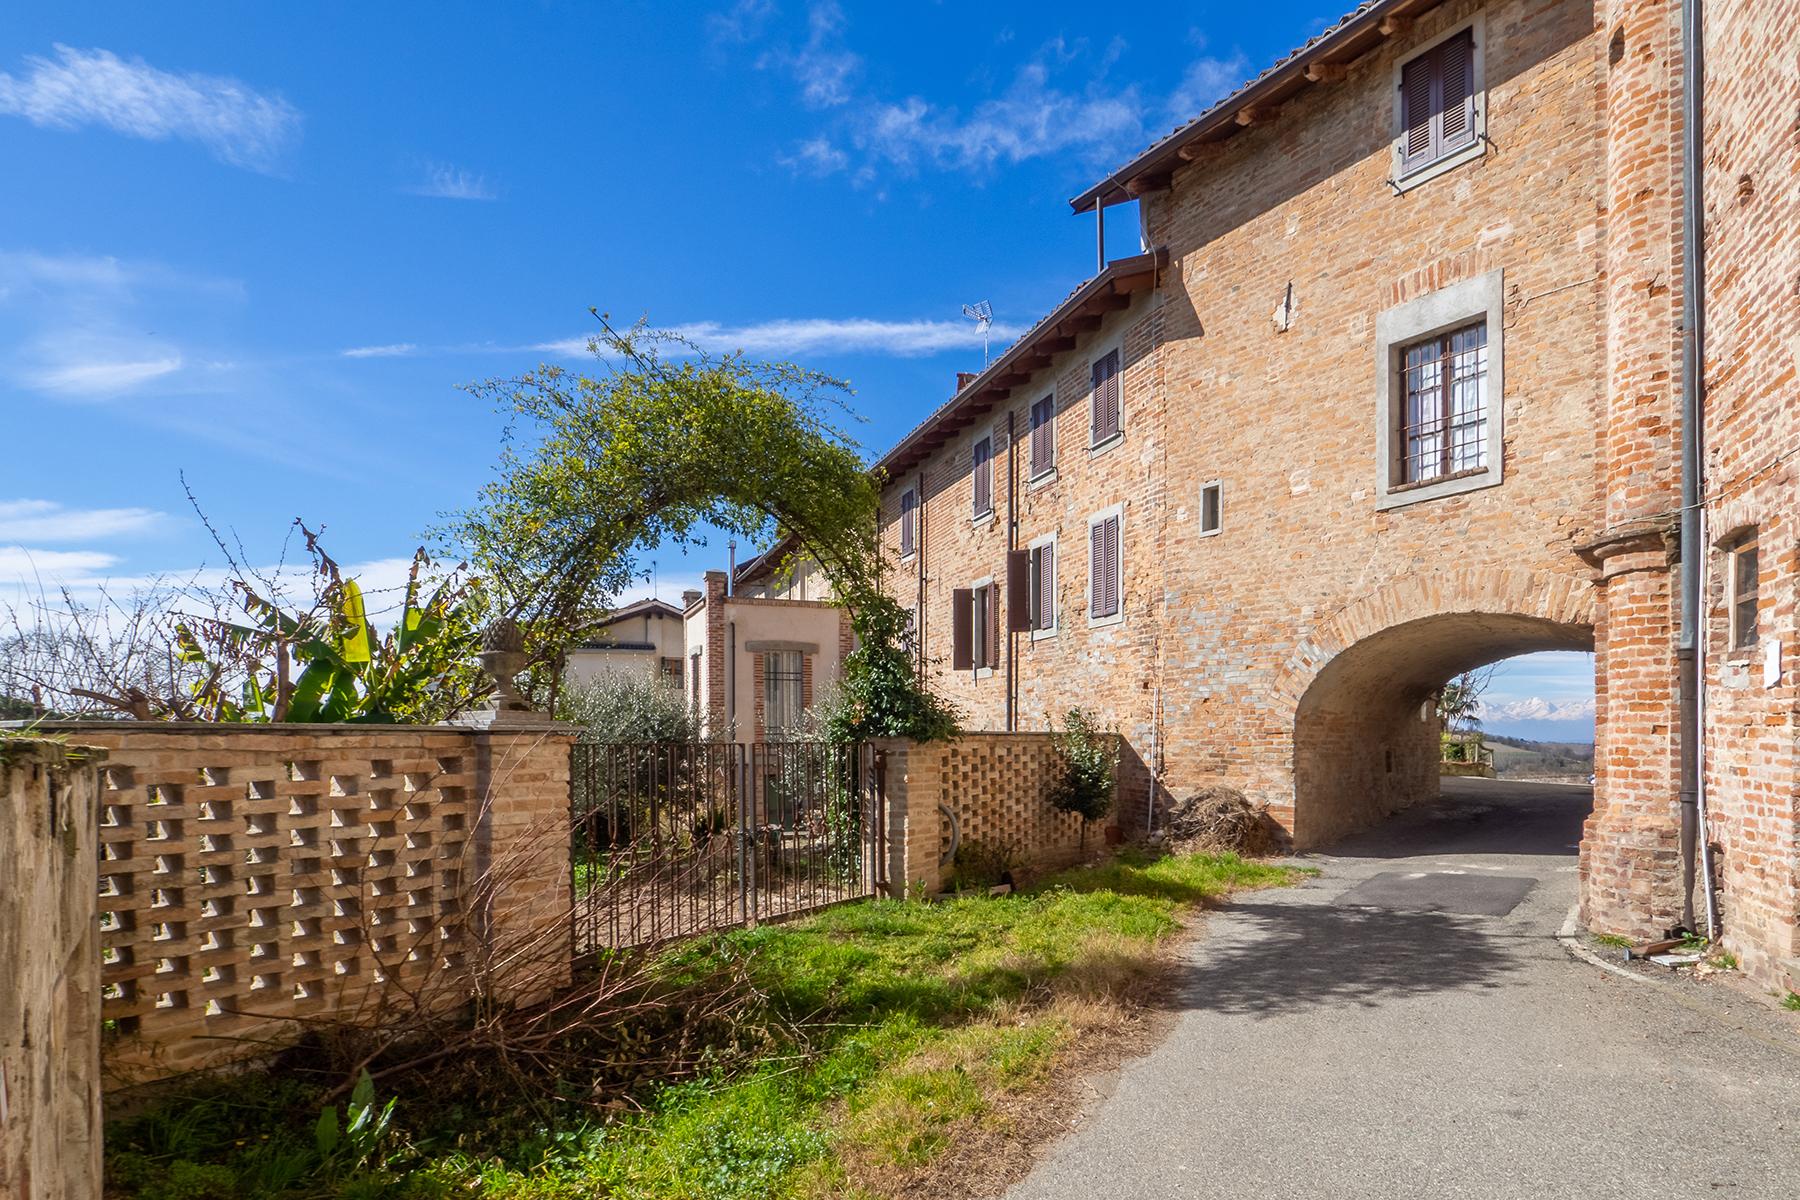 Affascinante ex - casa canonica racchiusa in un piccolo borgo del Monferrato. - 27